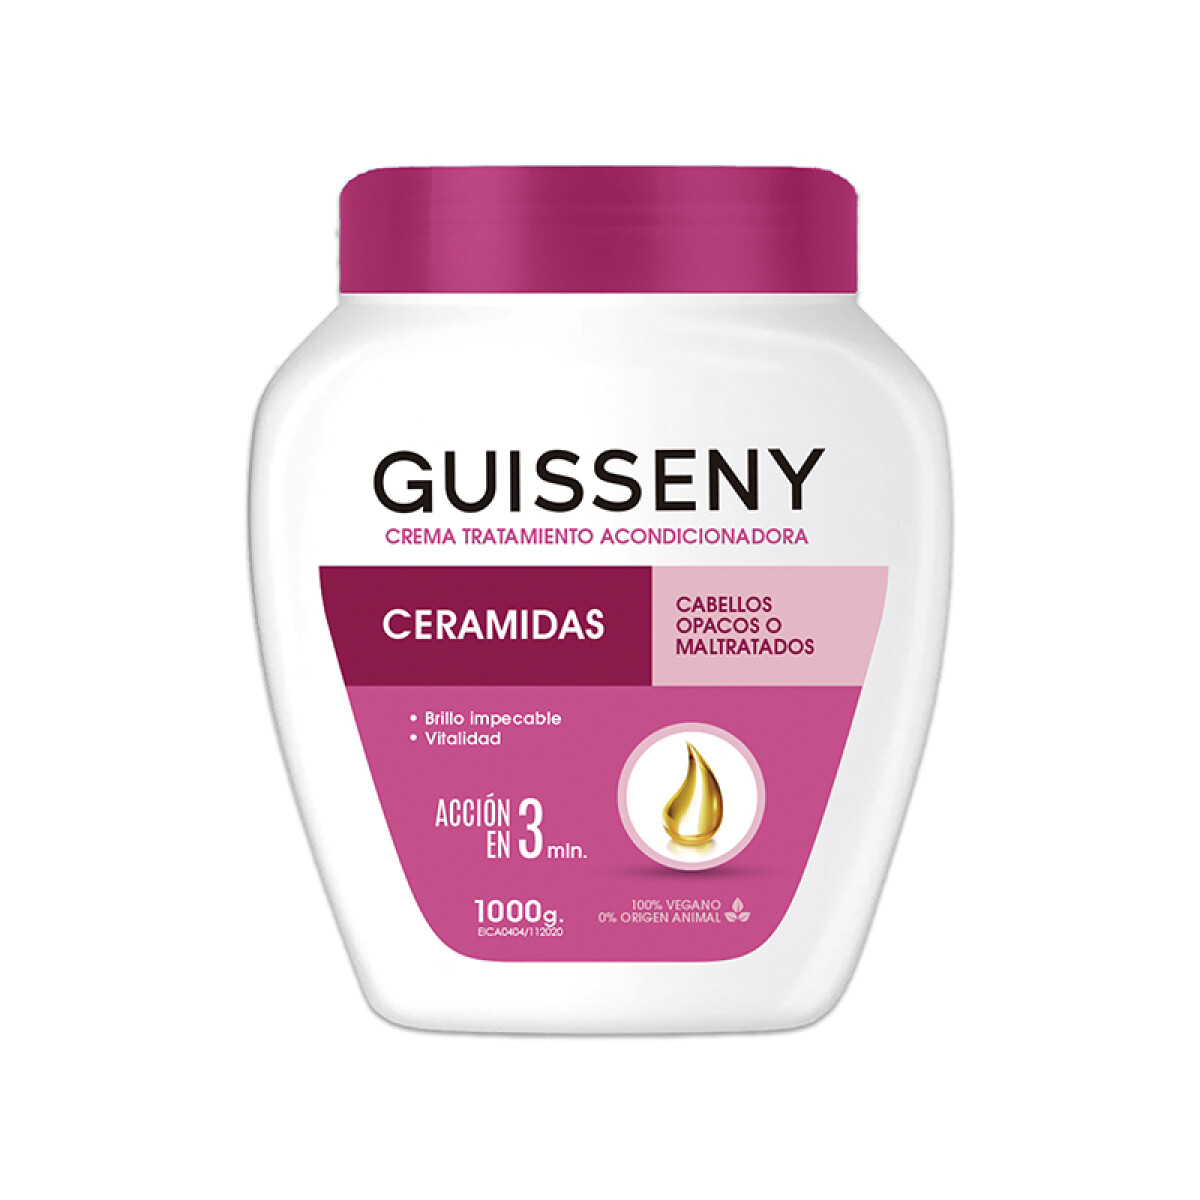 Crema tratamiento capilar 1000 g Guisseny - Ceramidas 